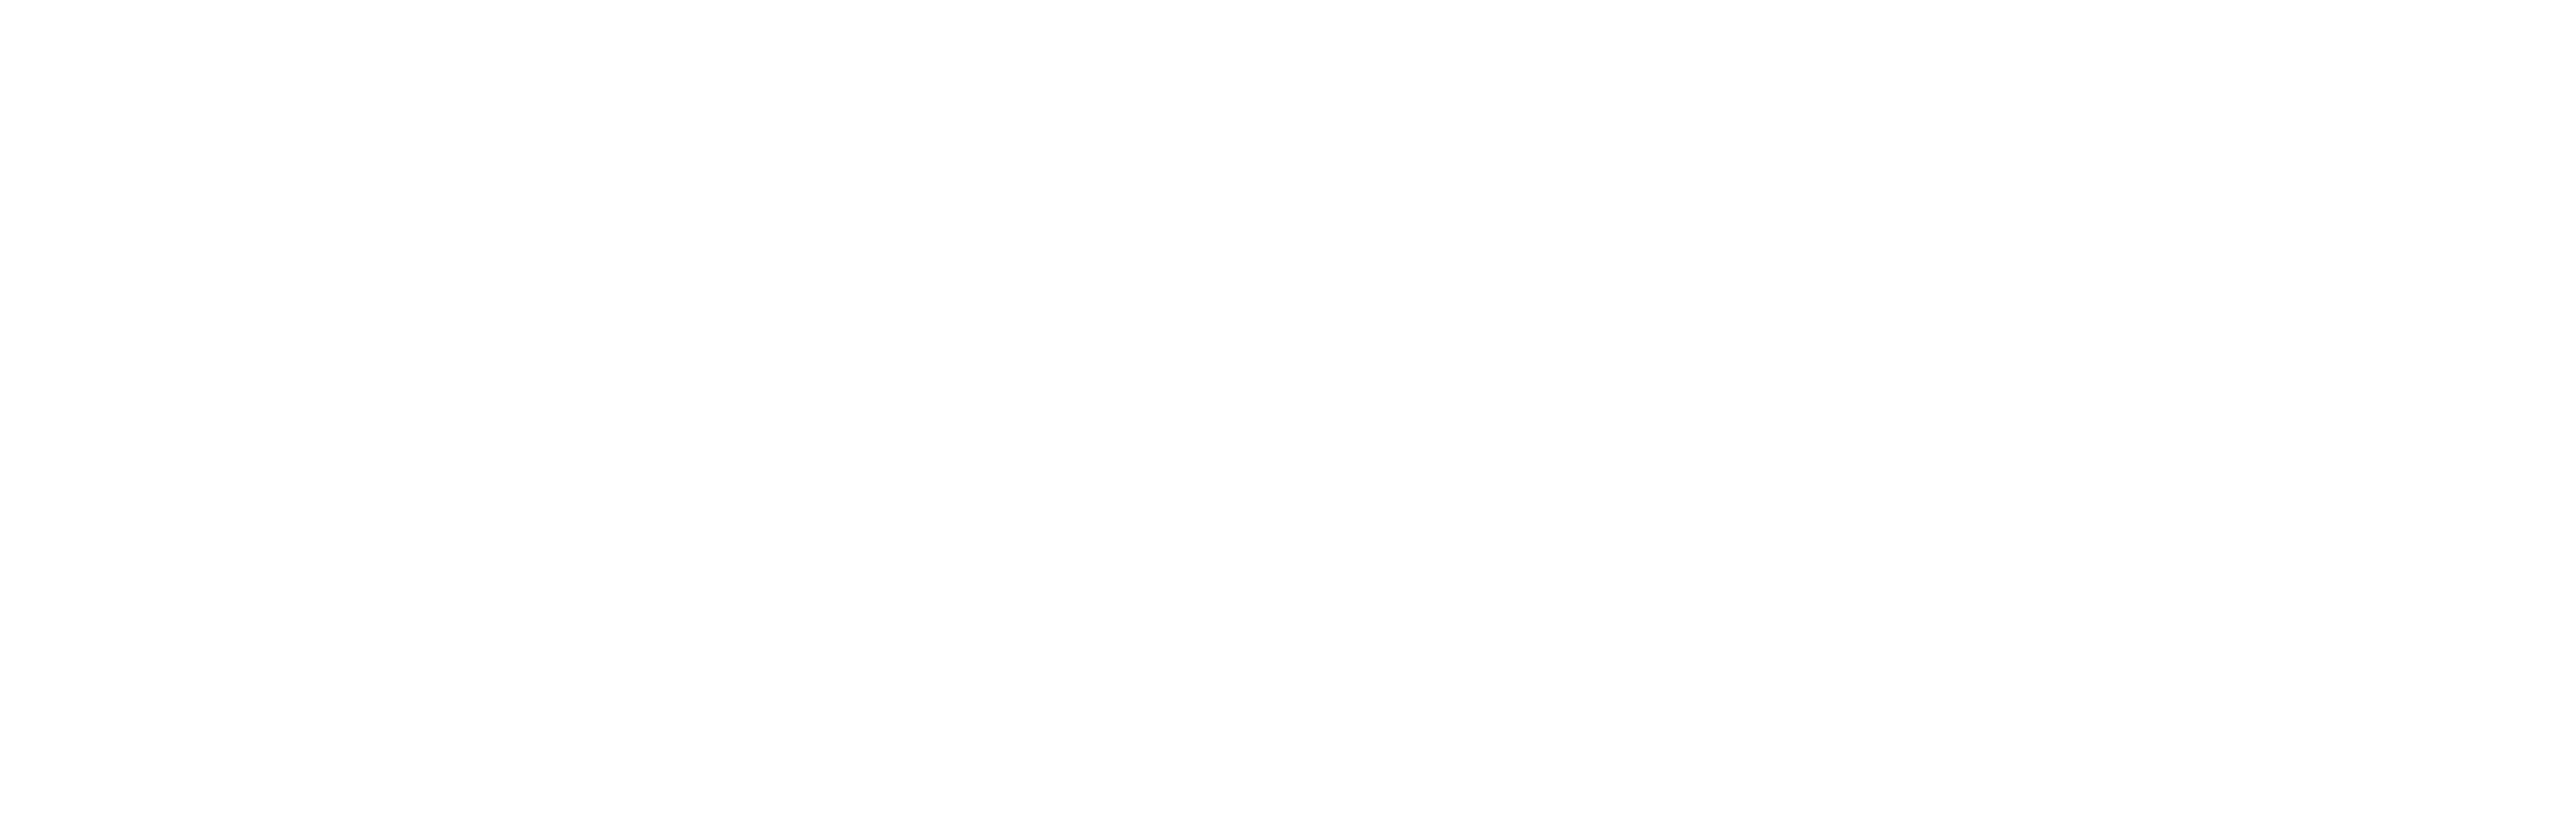 新logo1.png